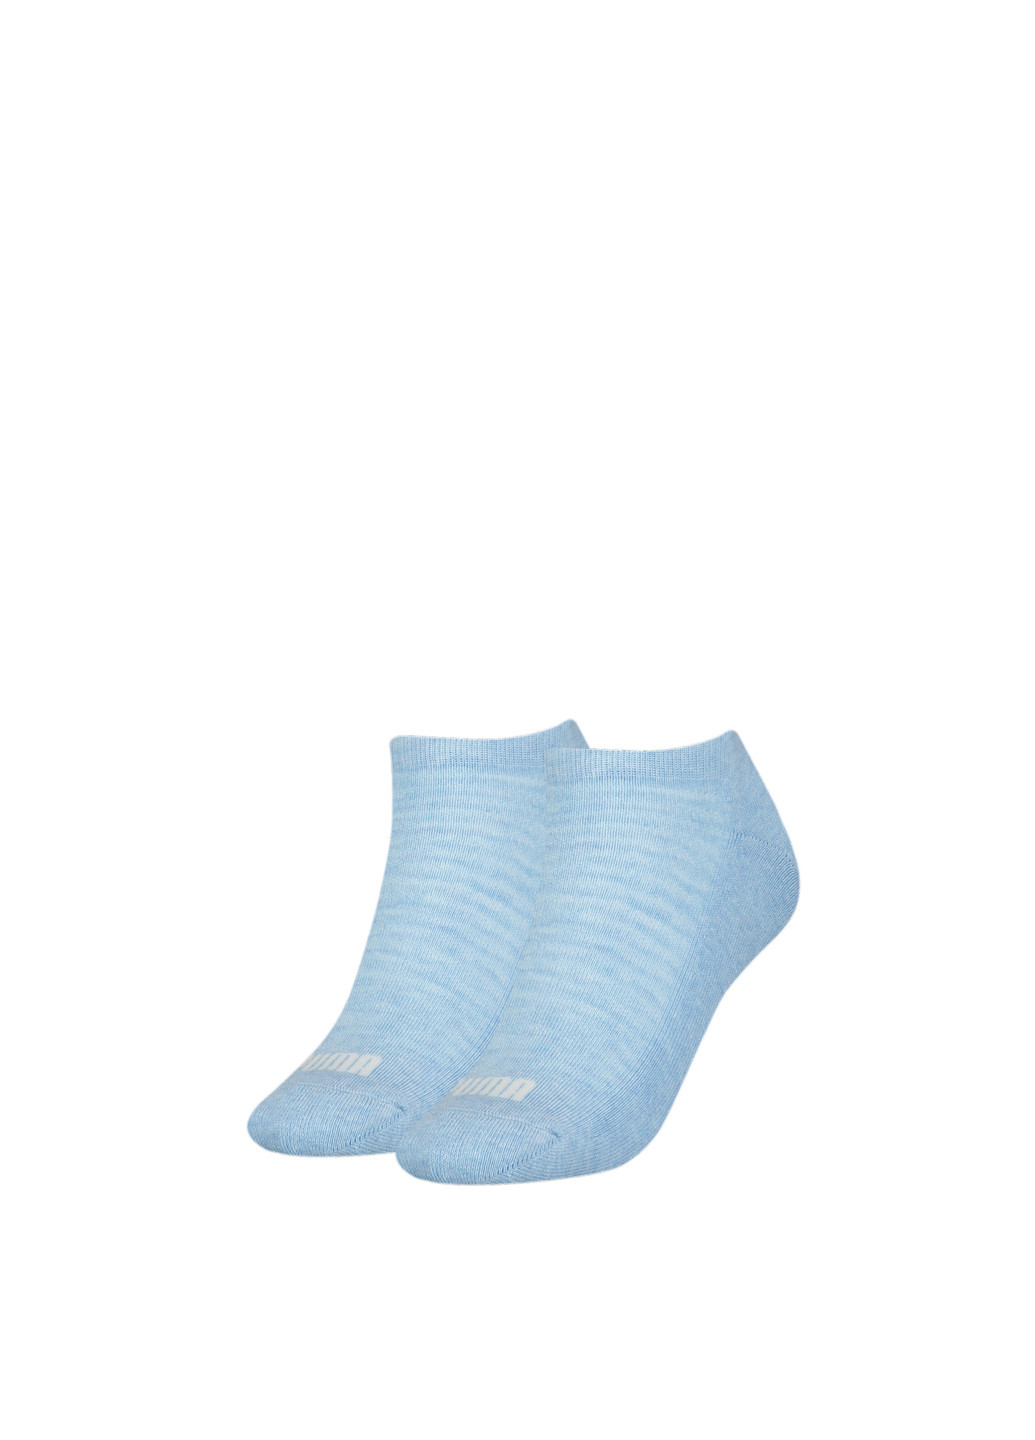 Носки Women's Sneaker Socks 2 pack Puma однотонные синие спортивные